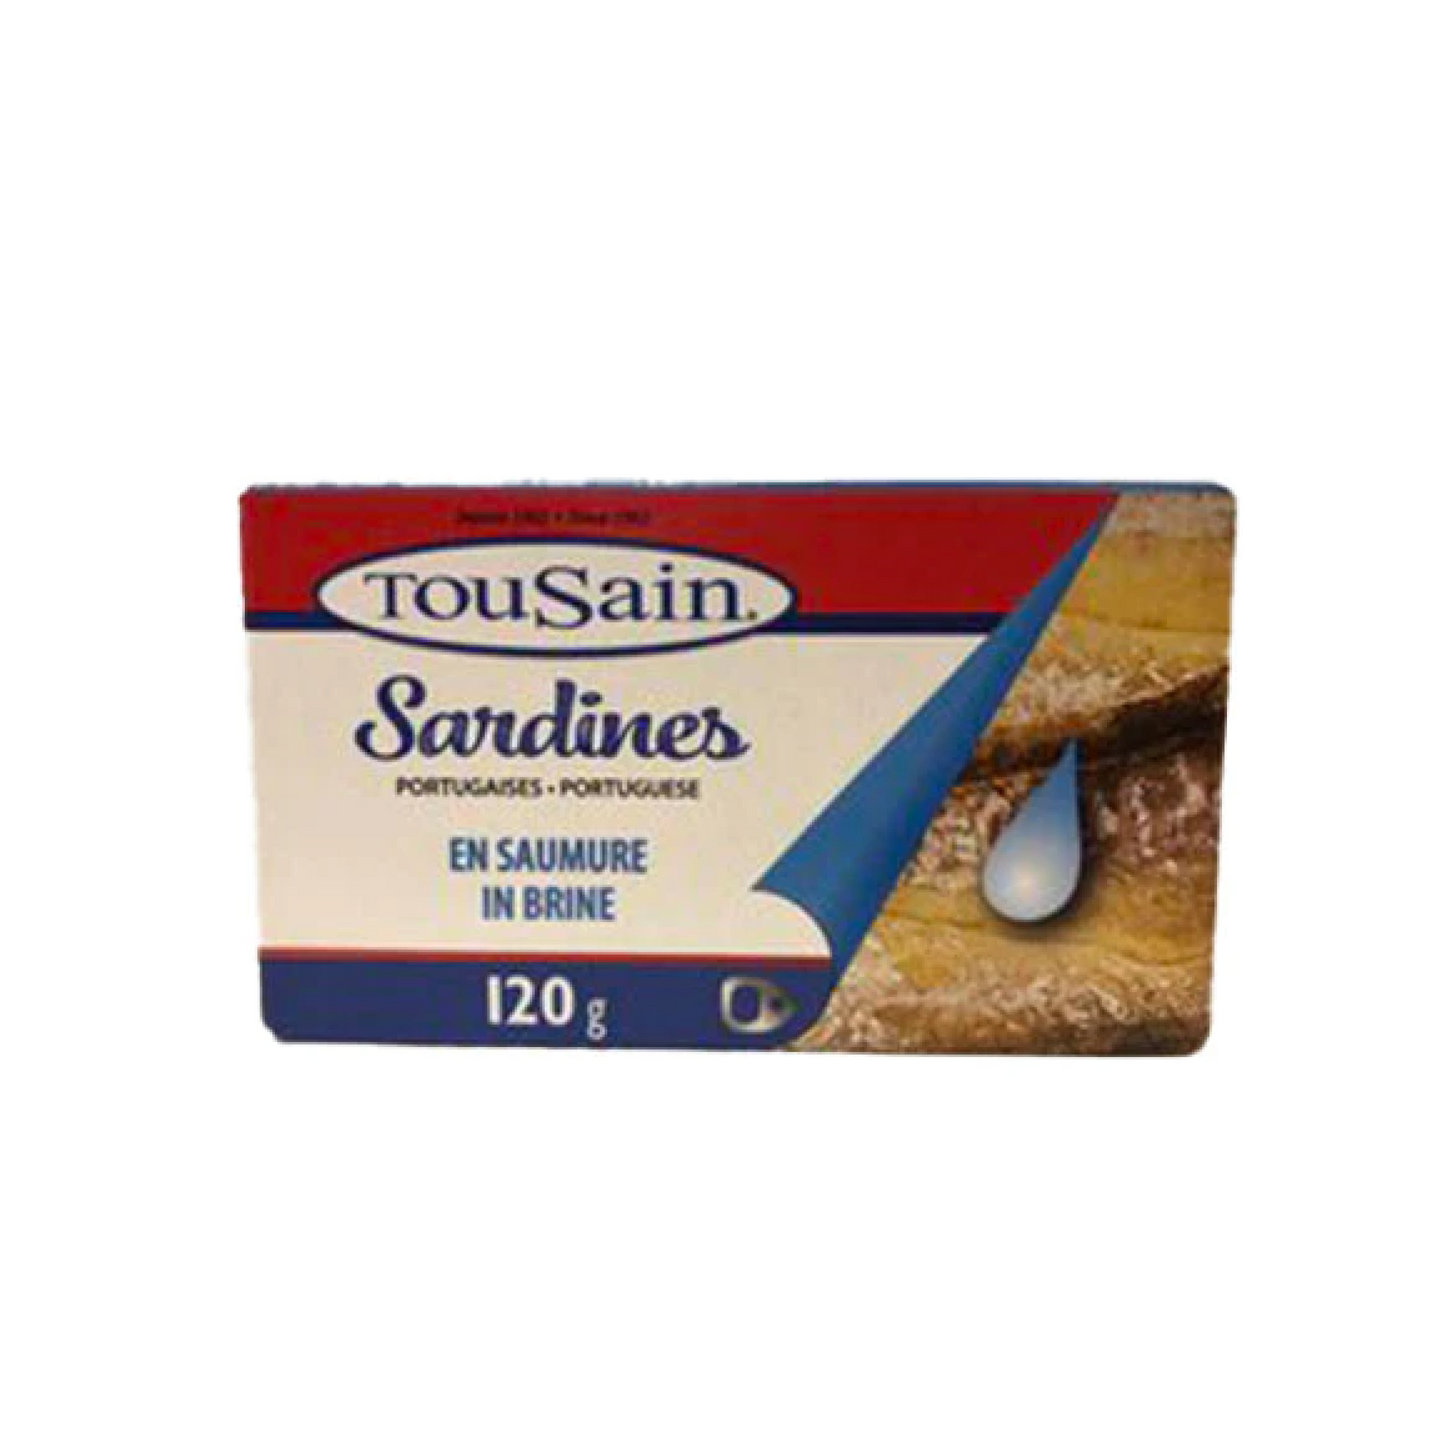 TouSain Sardines in Brine 120g